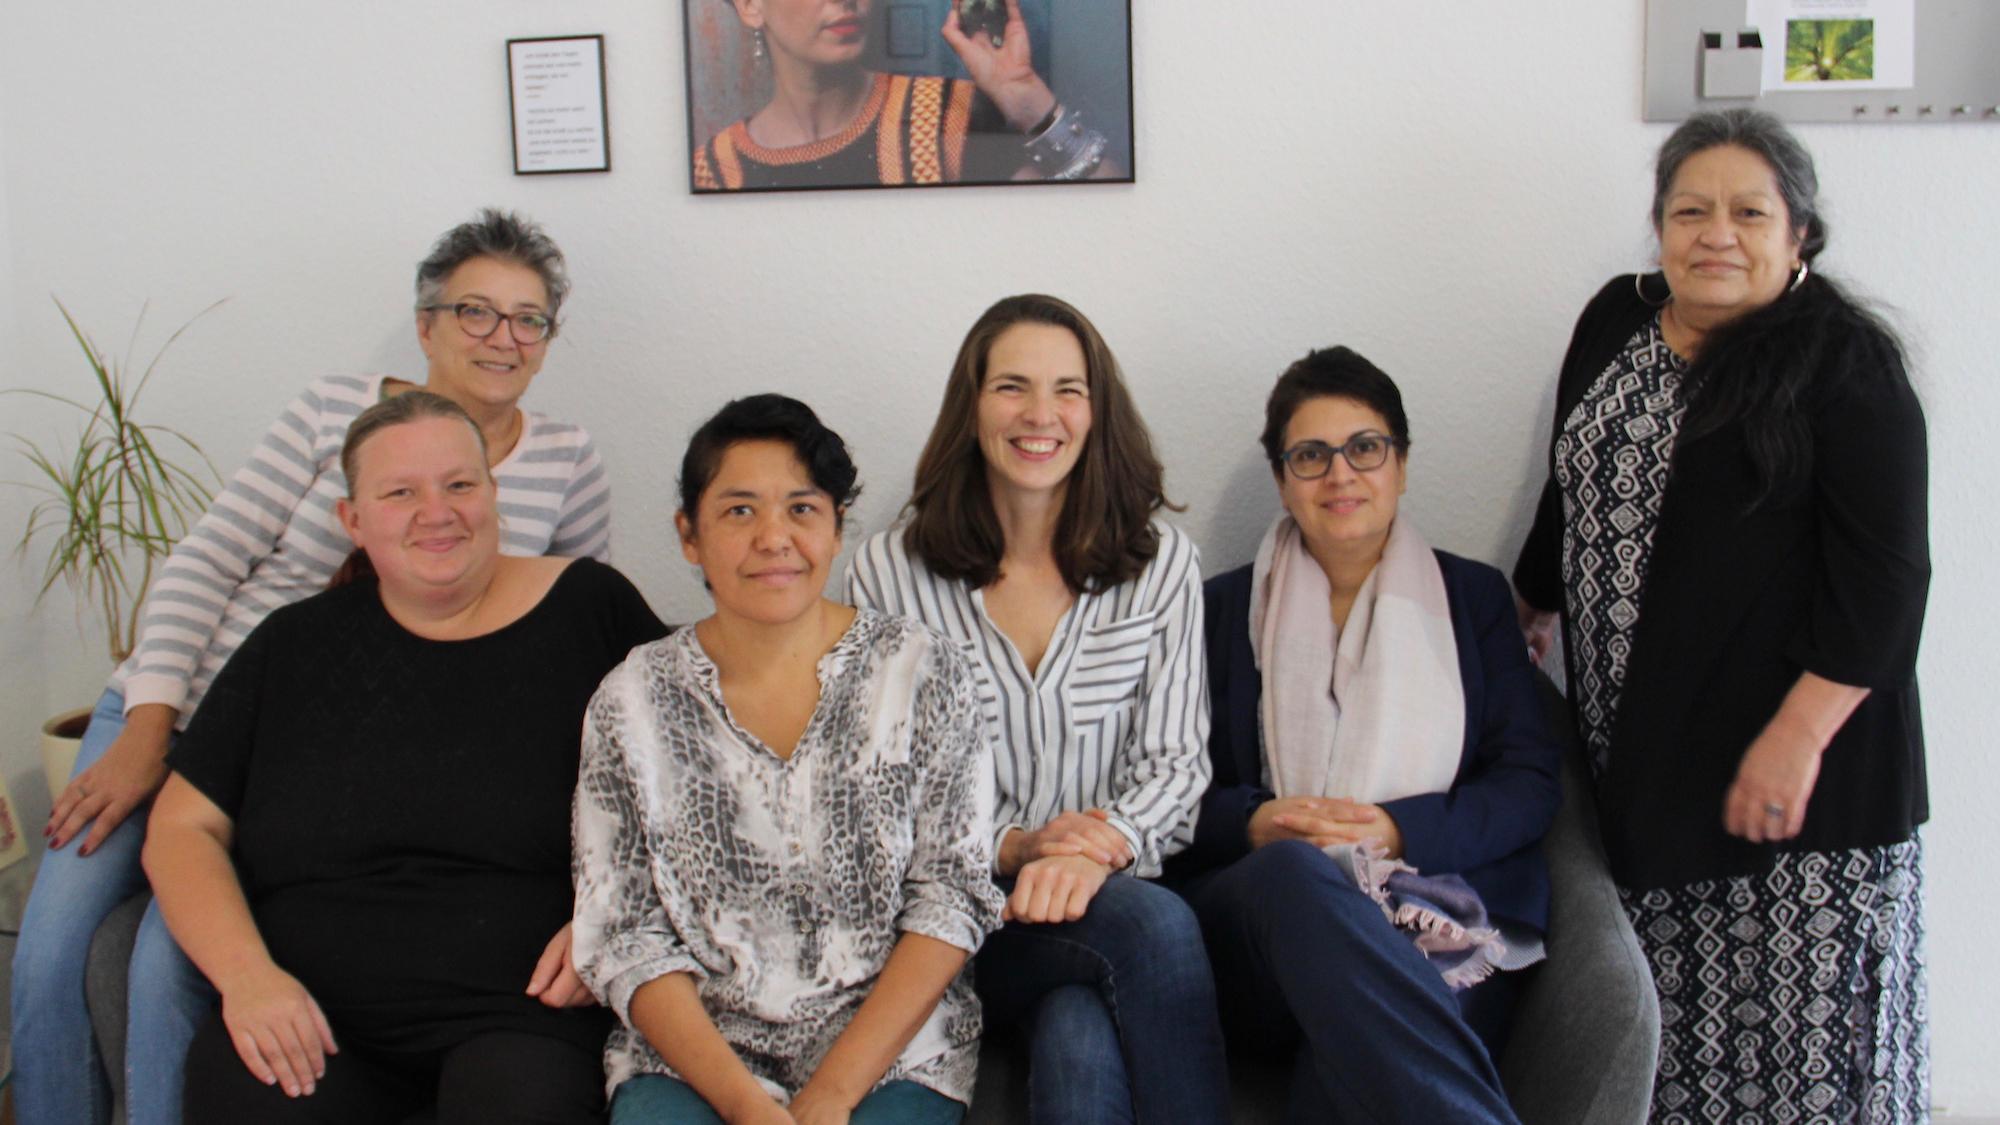 Starkes Team: Projektleiterin Melanie Kohnen (3. von rechts) mit einigen ihrer Frauen. (c) Andrea Thomas